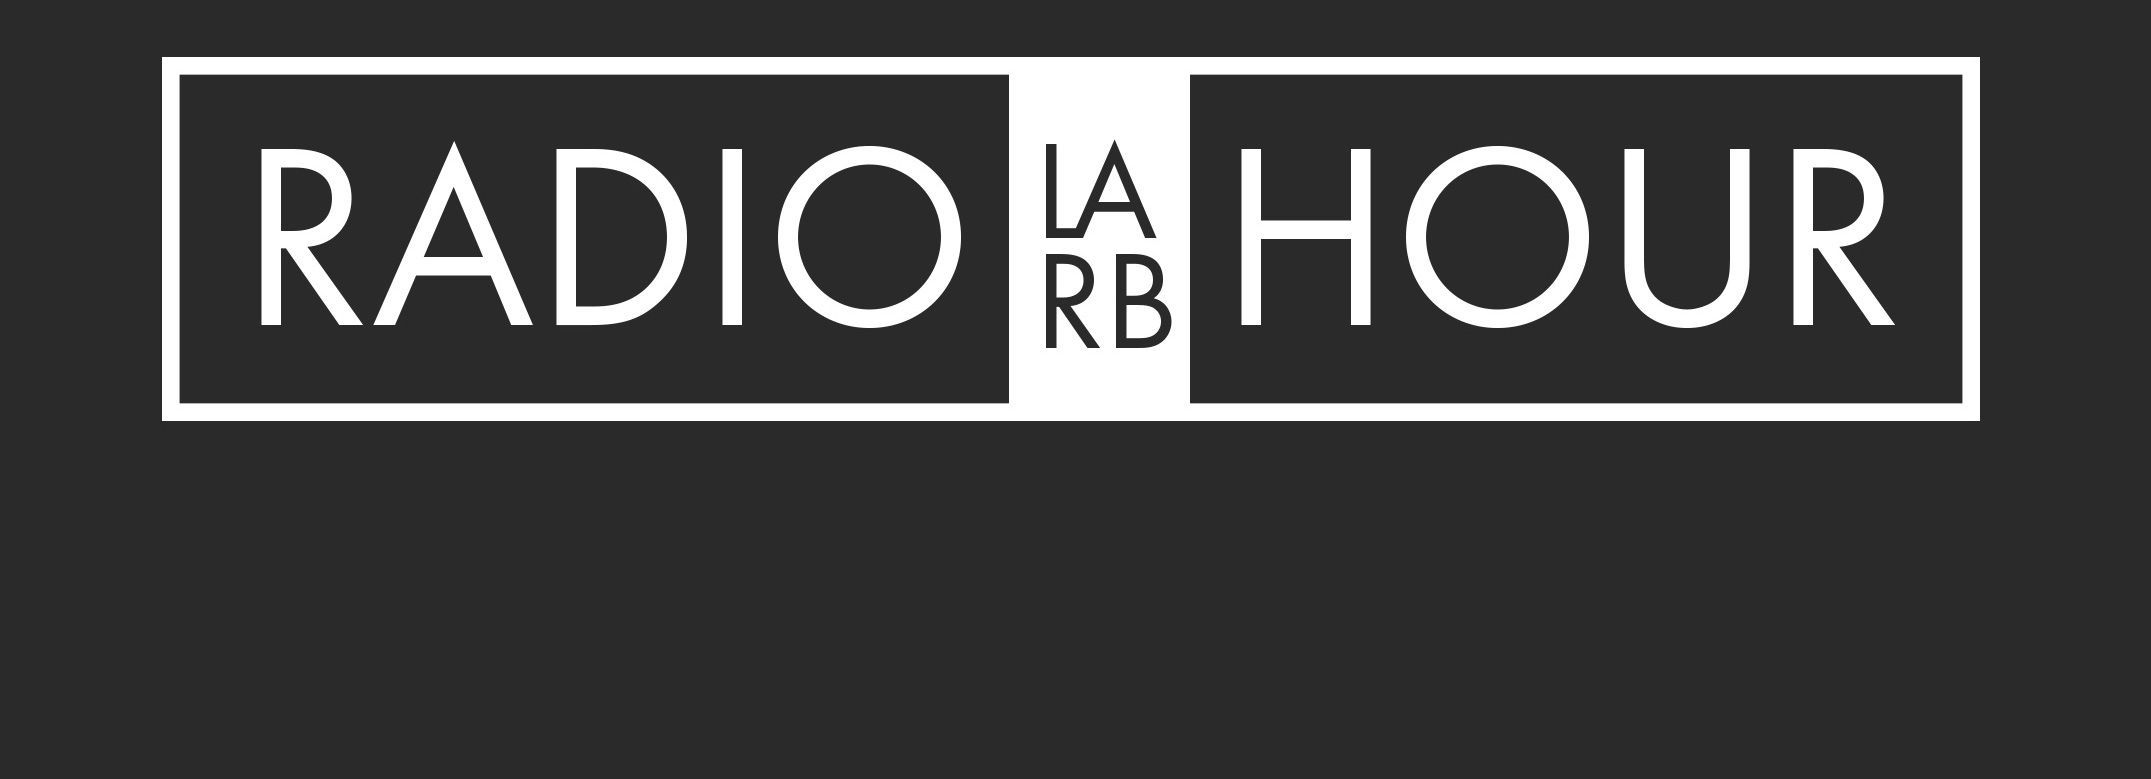 Radio Hour: Deanne Stillman’s “Twentynine Palms” and Nora Ephron